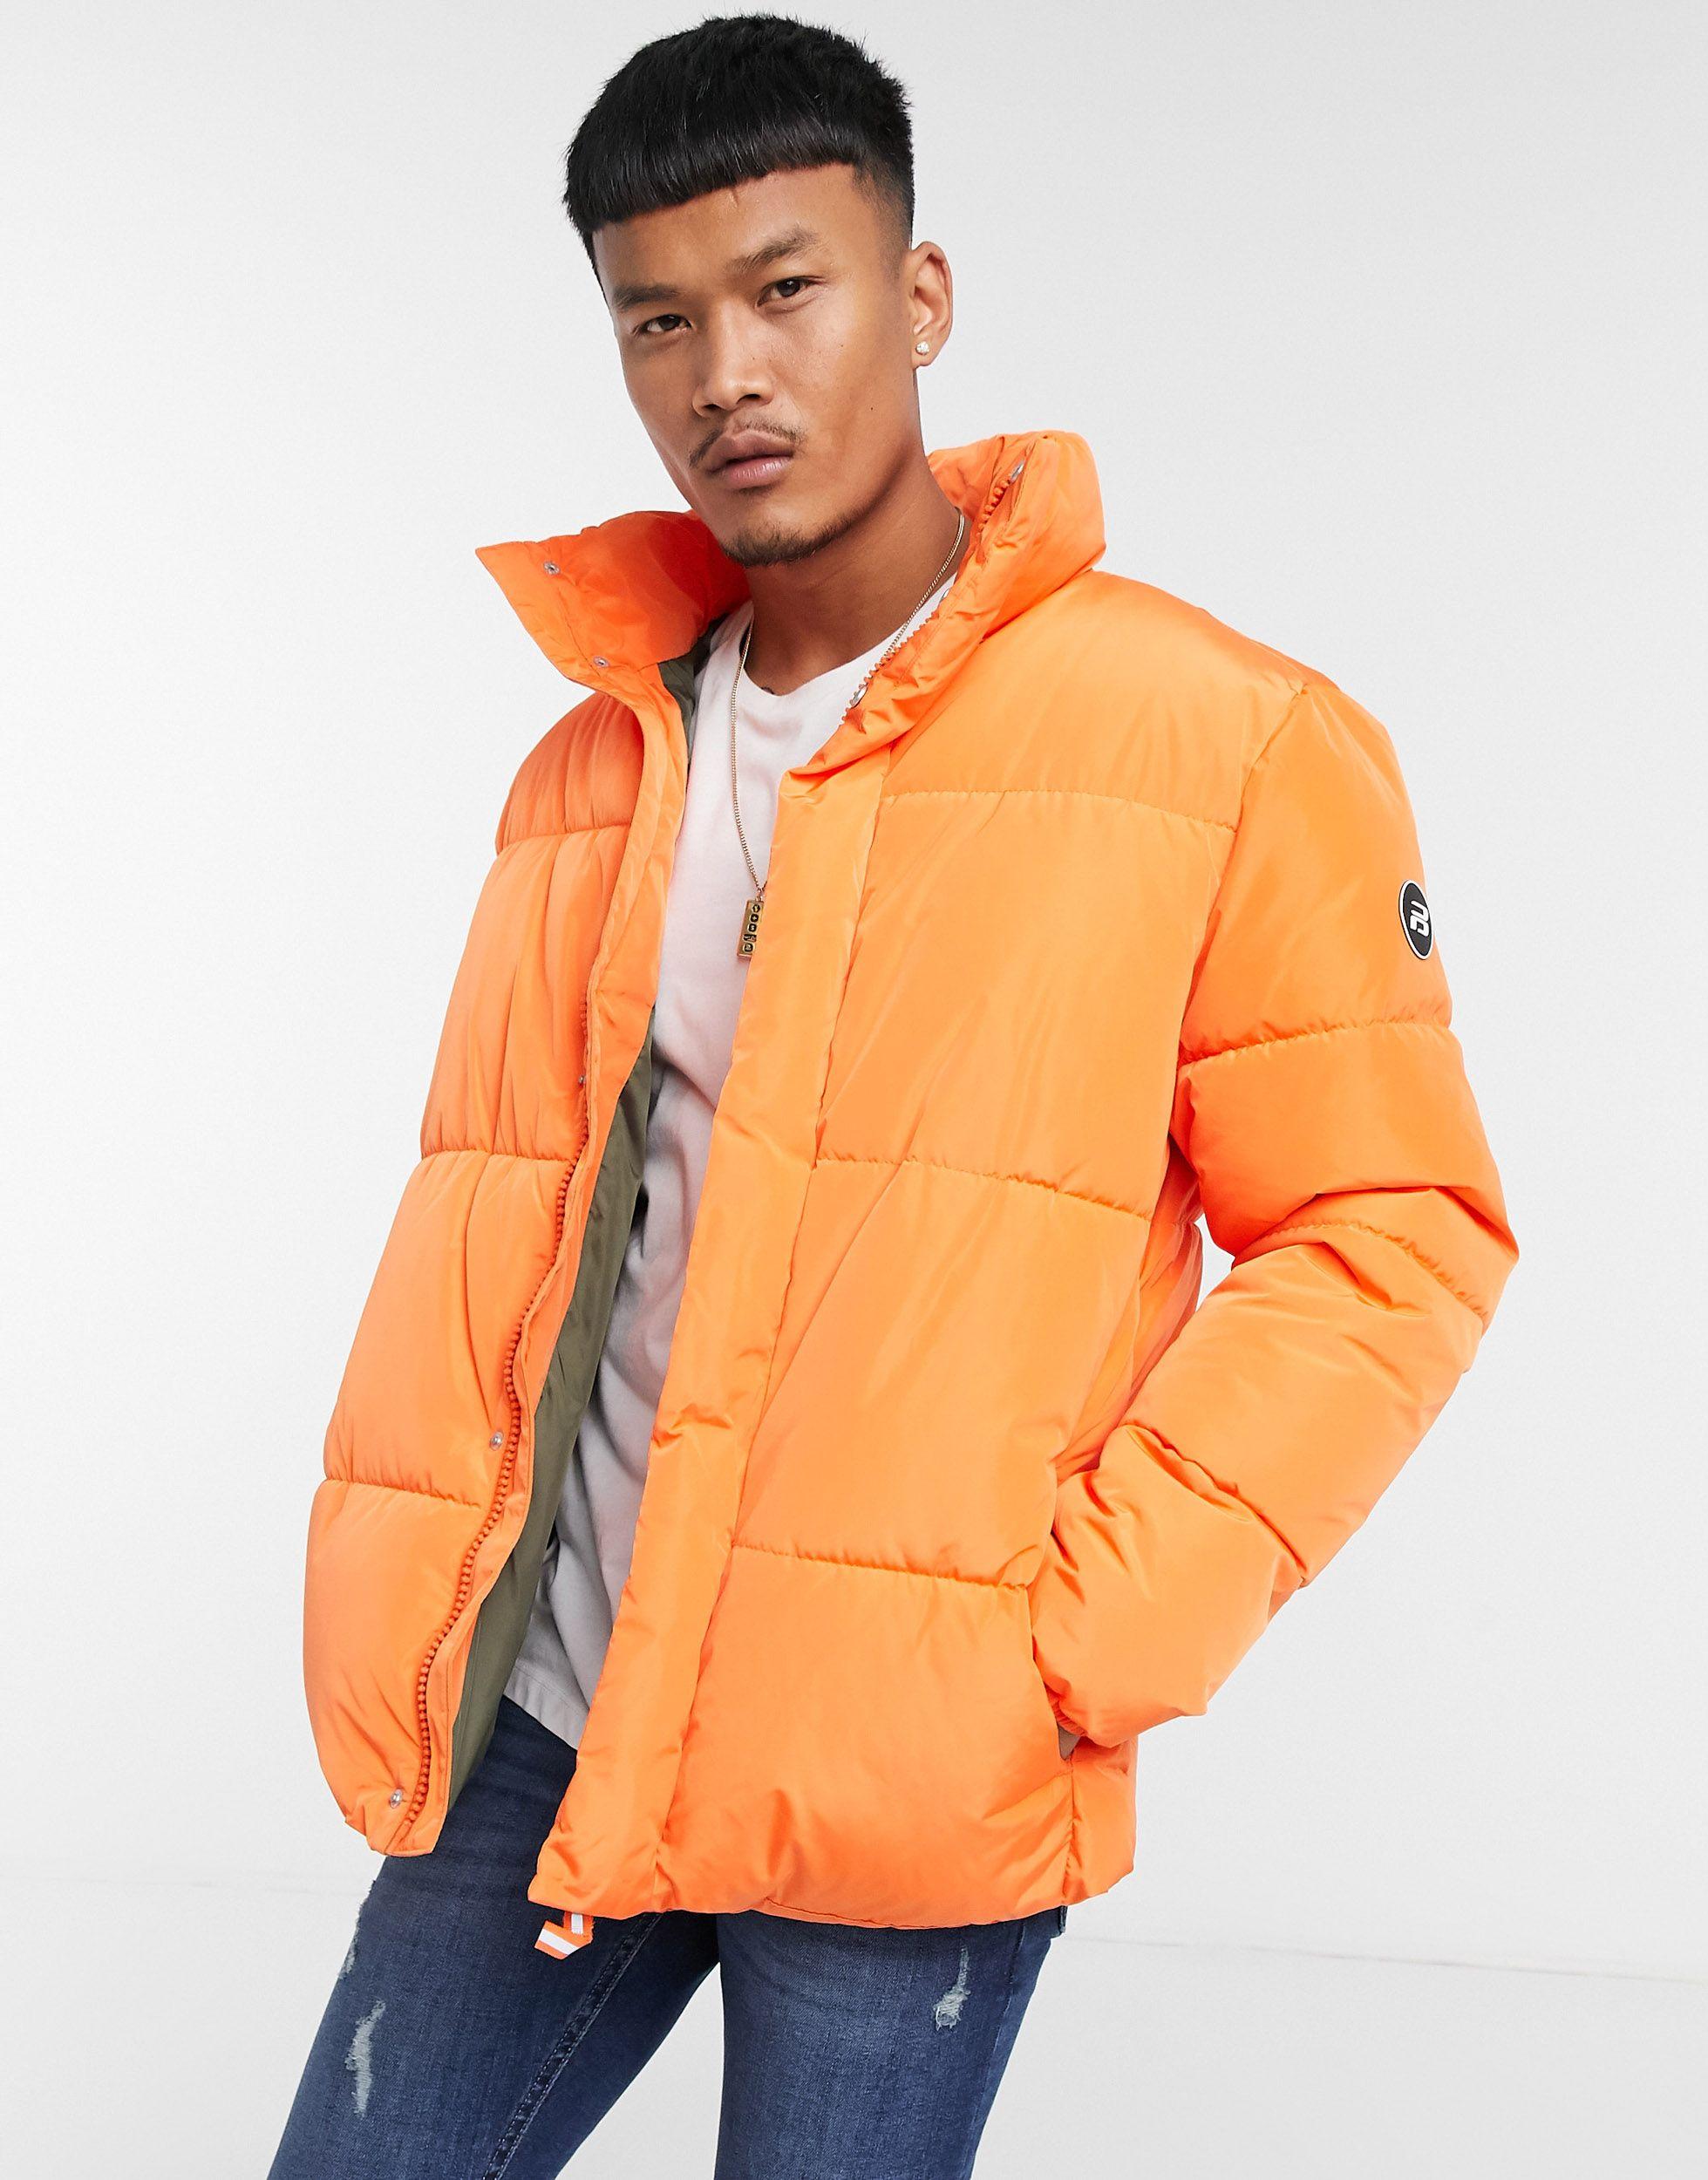 Pull&Bear Padded Puffer Jacket in Orange for Men - Lyst